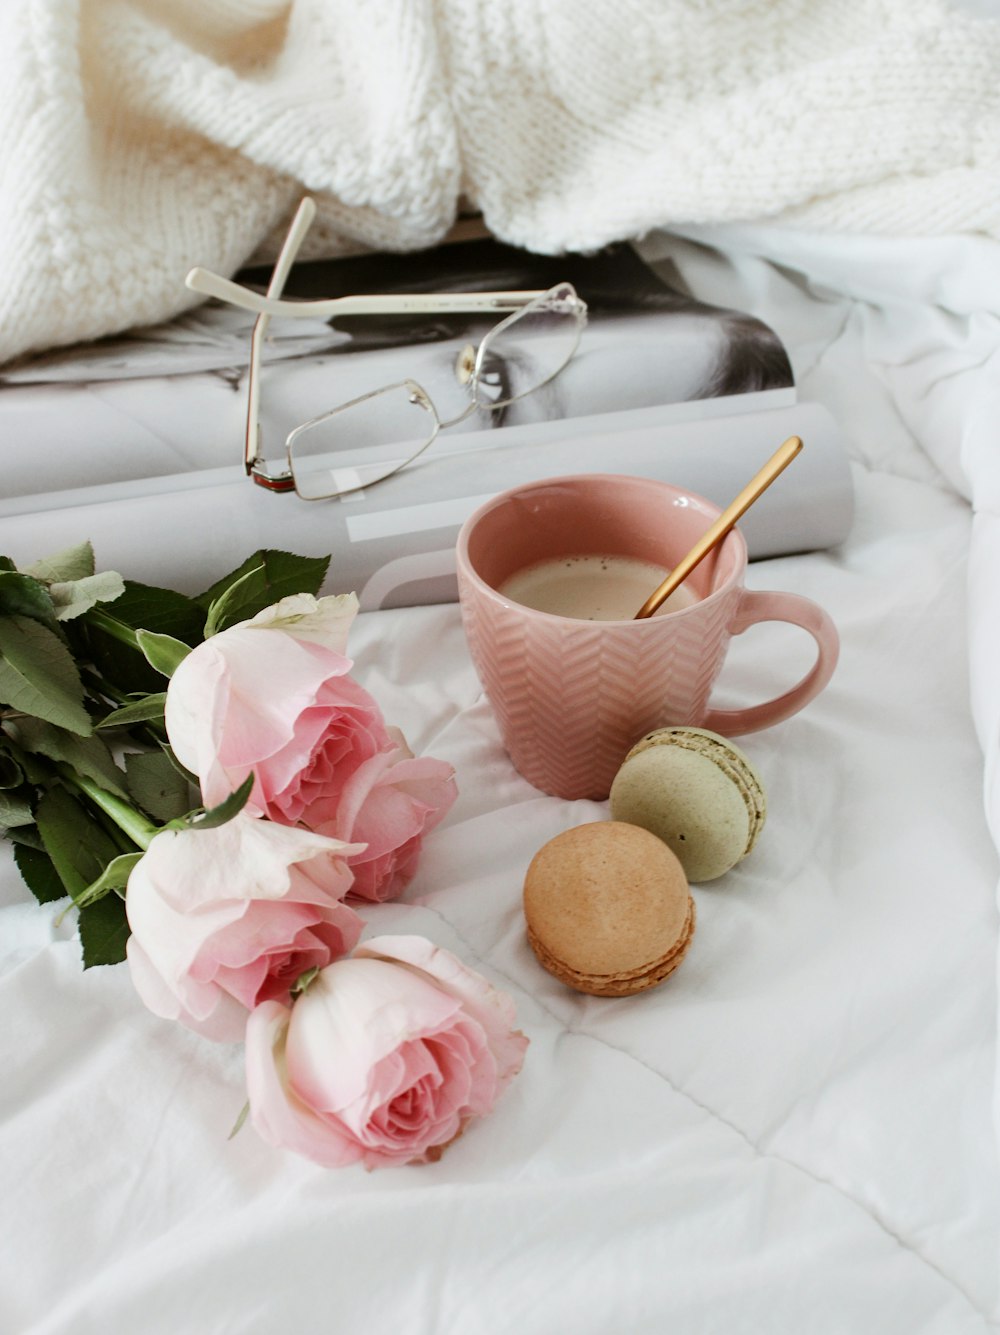 xícara de chá de cerâmica rosa e branca no tecido branco